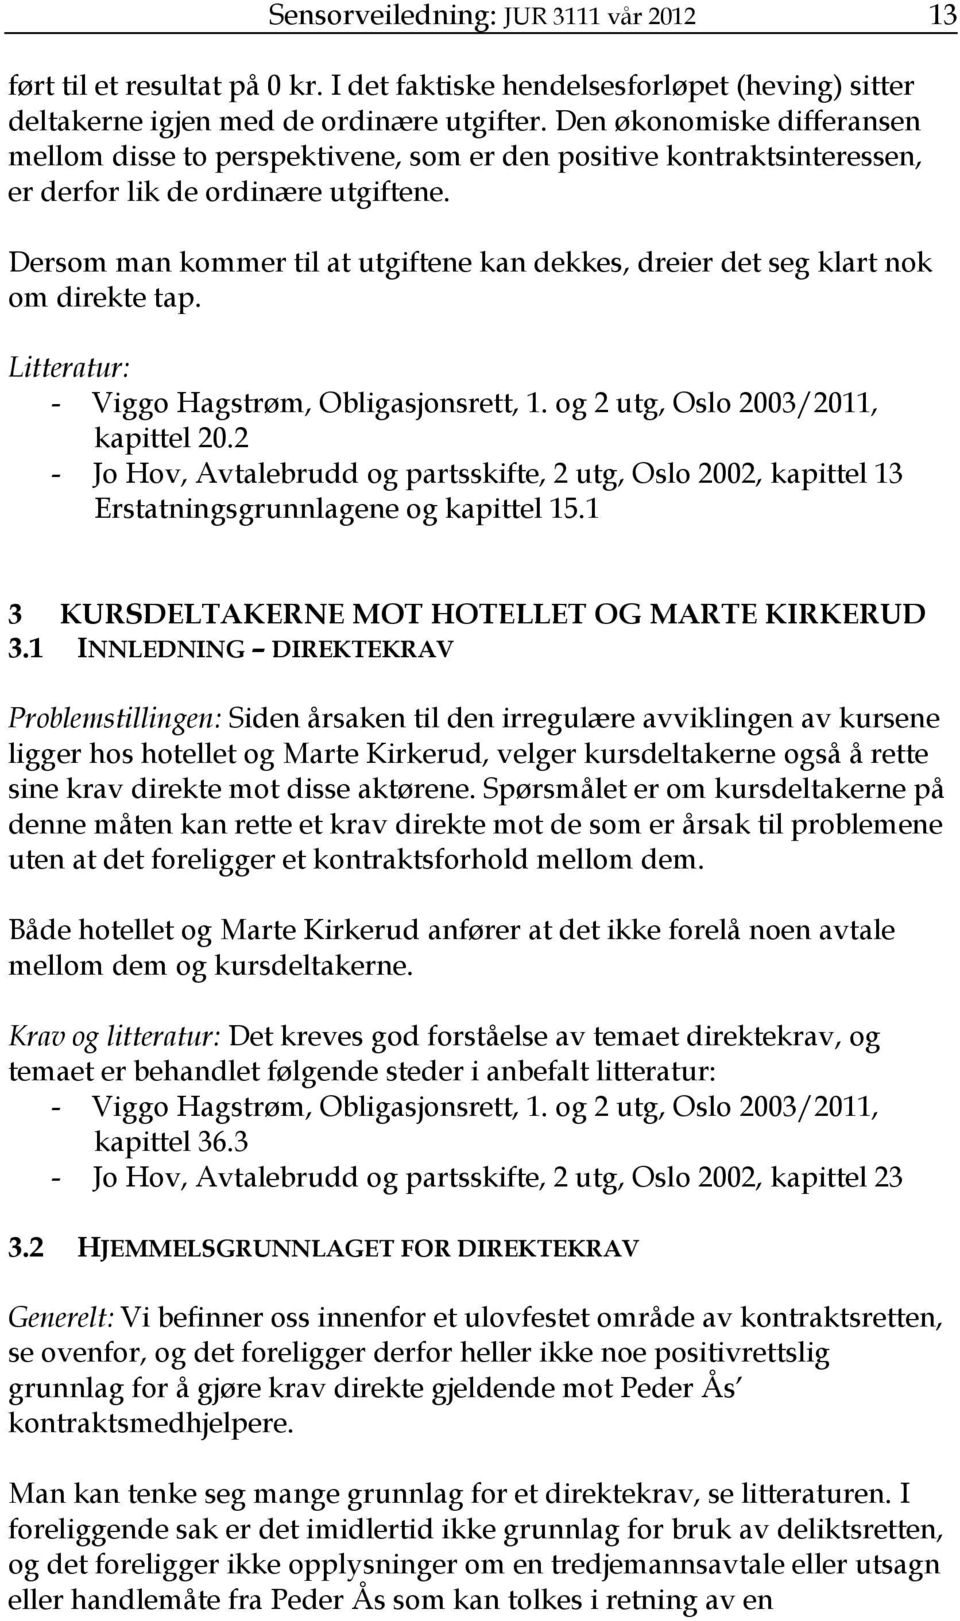 Dersom man kommer til at utgiftene kan dekkes, dreier det seg klart nok om direkte tap. Litteratur: - Viggo Hagstrøm, Obligasjonsrett, 1. og 2 utg, Oslo 2003/2011, kapittel 20.